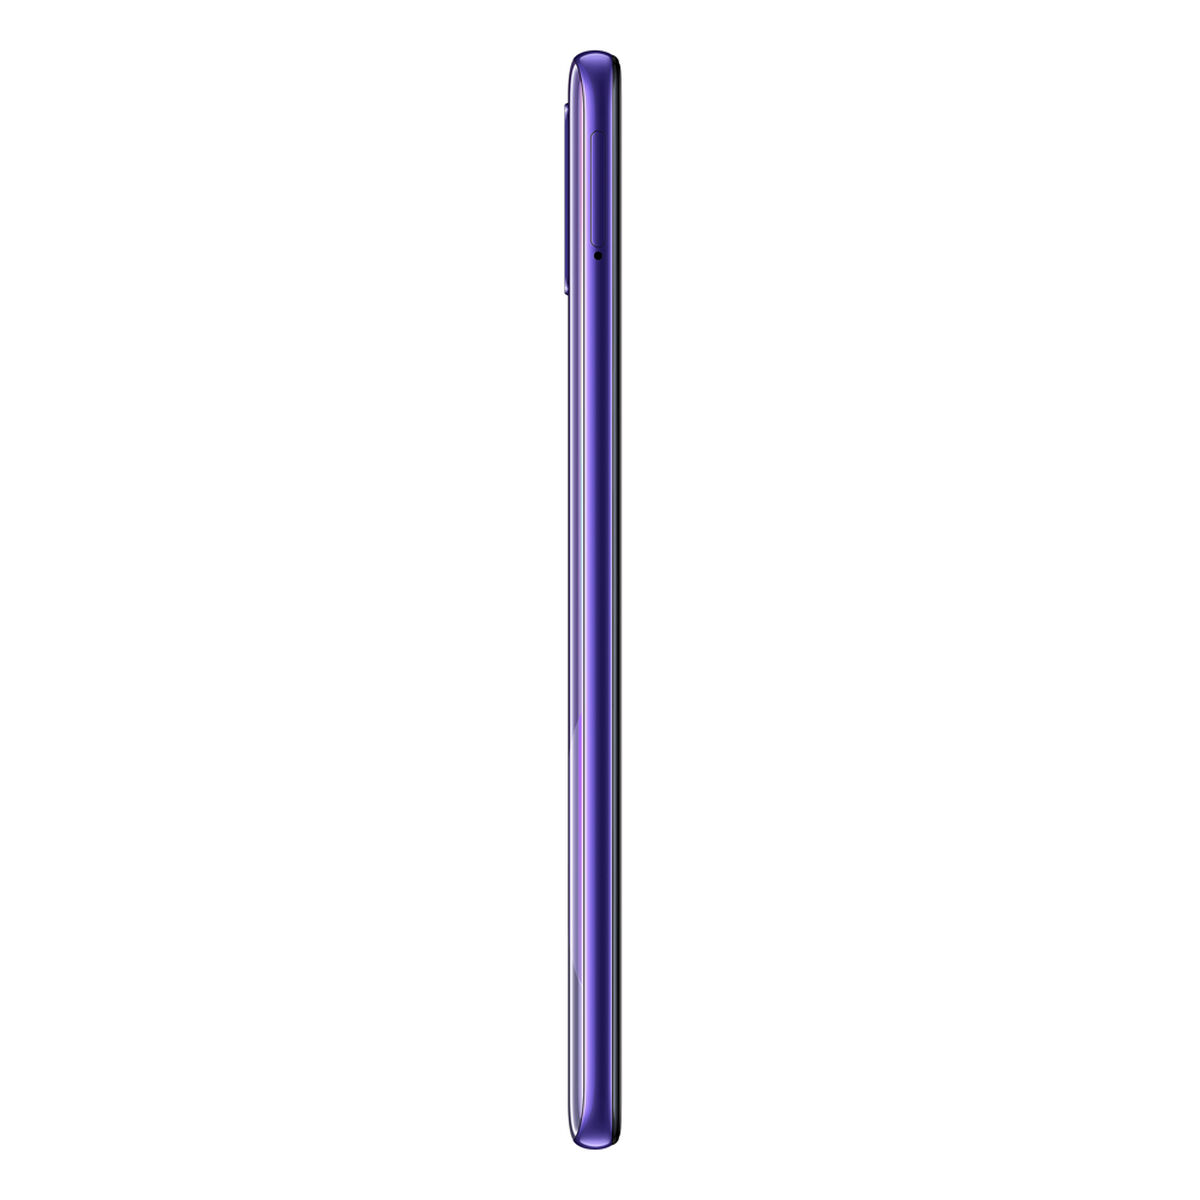 Celular Samsung Galaxy A30s 64GB 6.4" Violeta Liberado